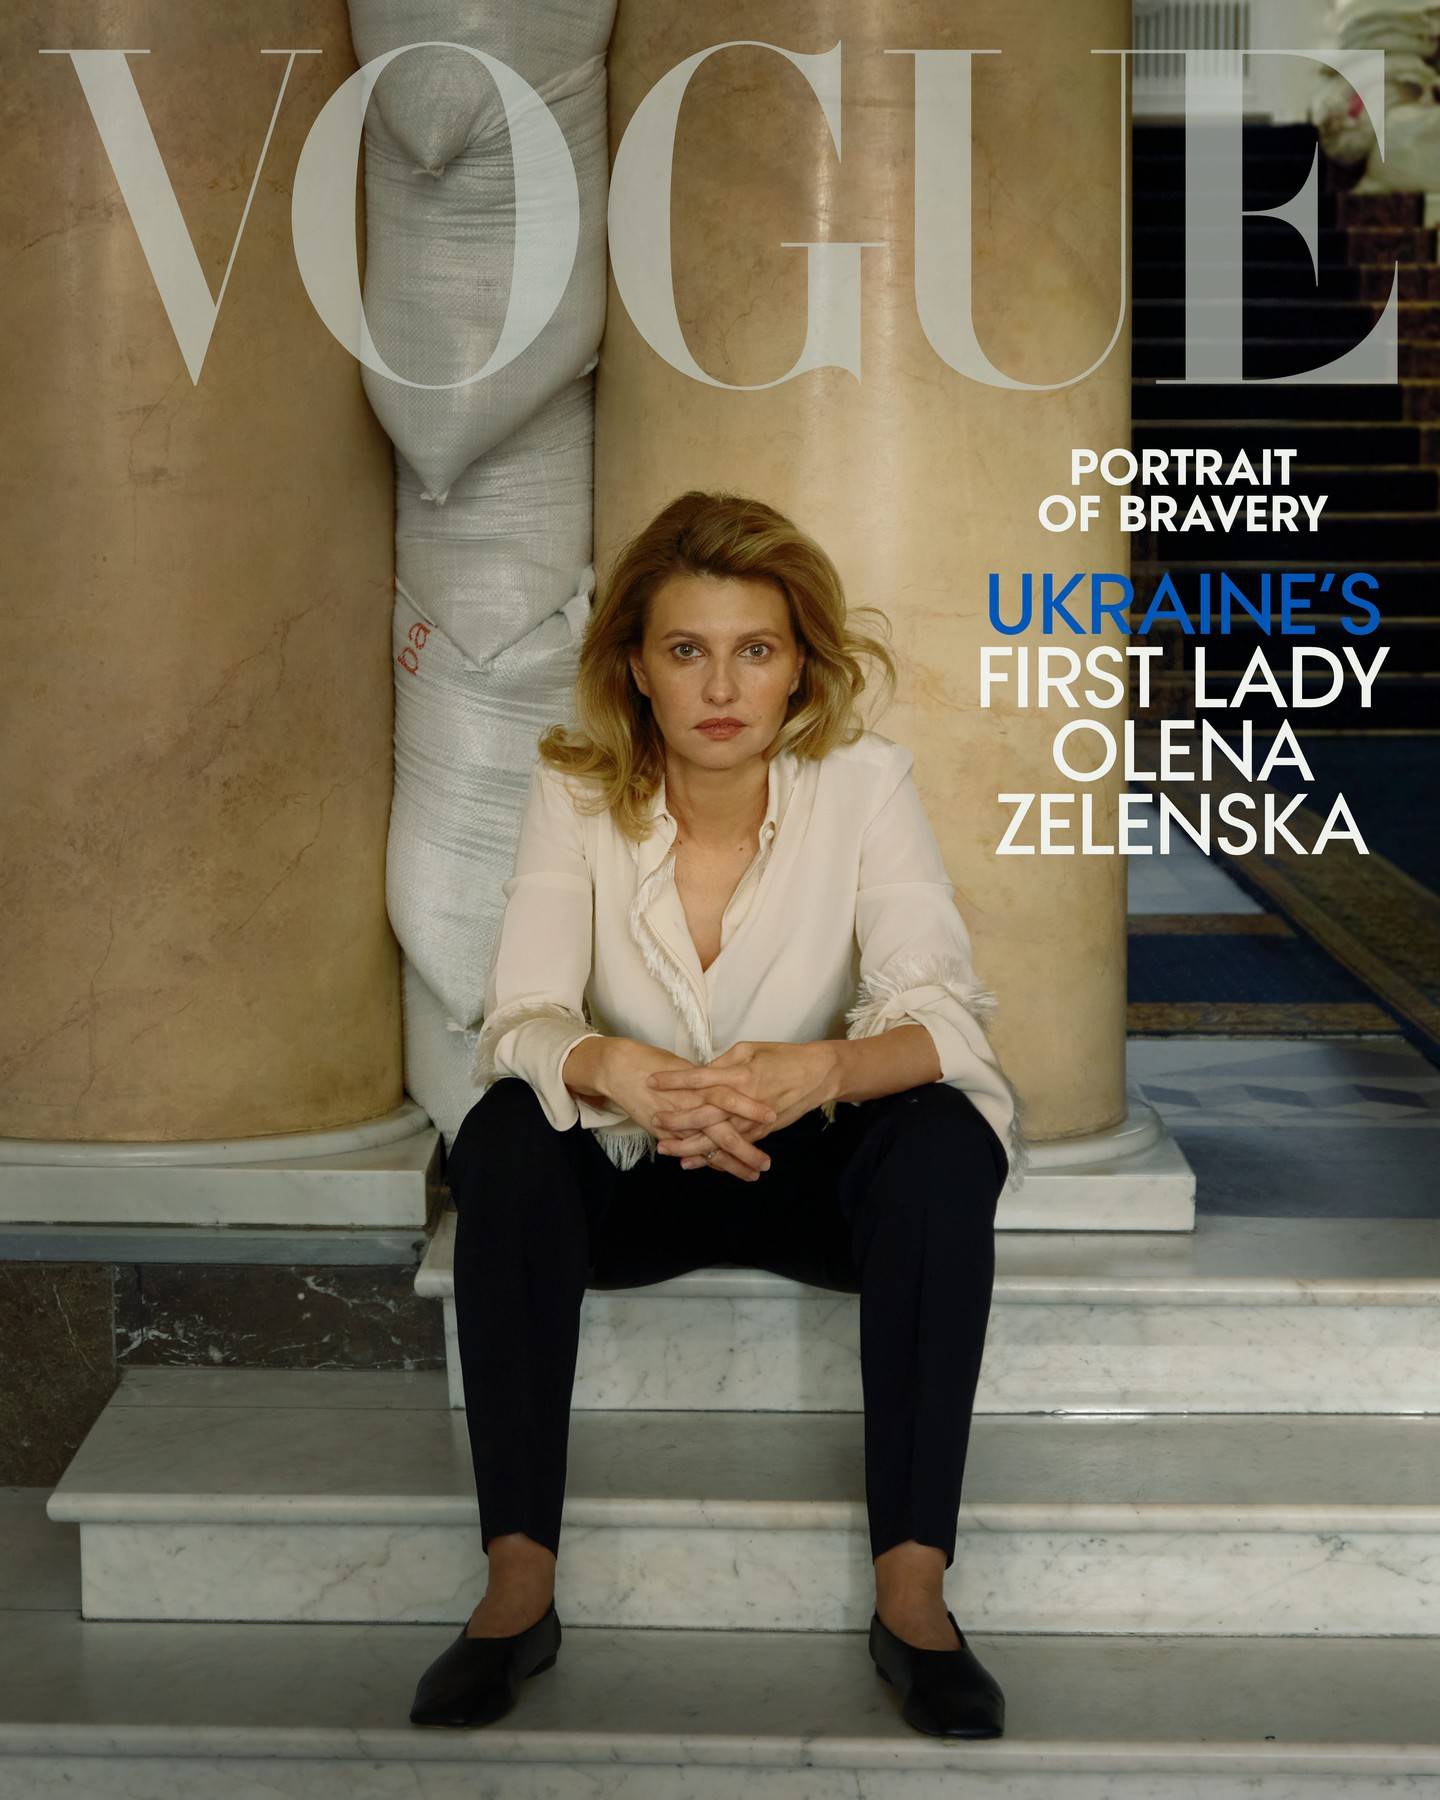 Ukraine's First Lady Olena Zelenska on a special digital cover of 'Vogue'. Instagram / voguemagazine